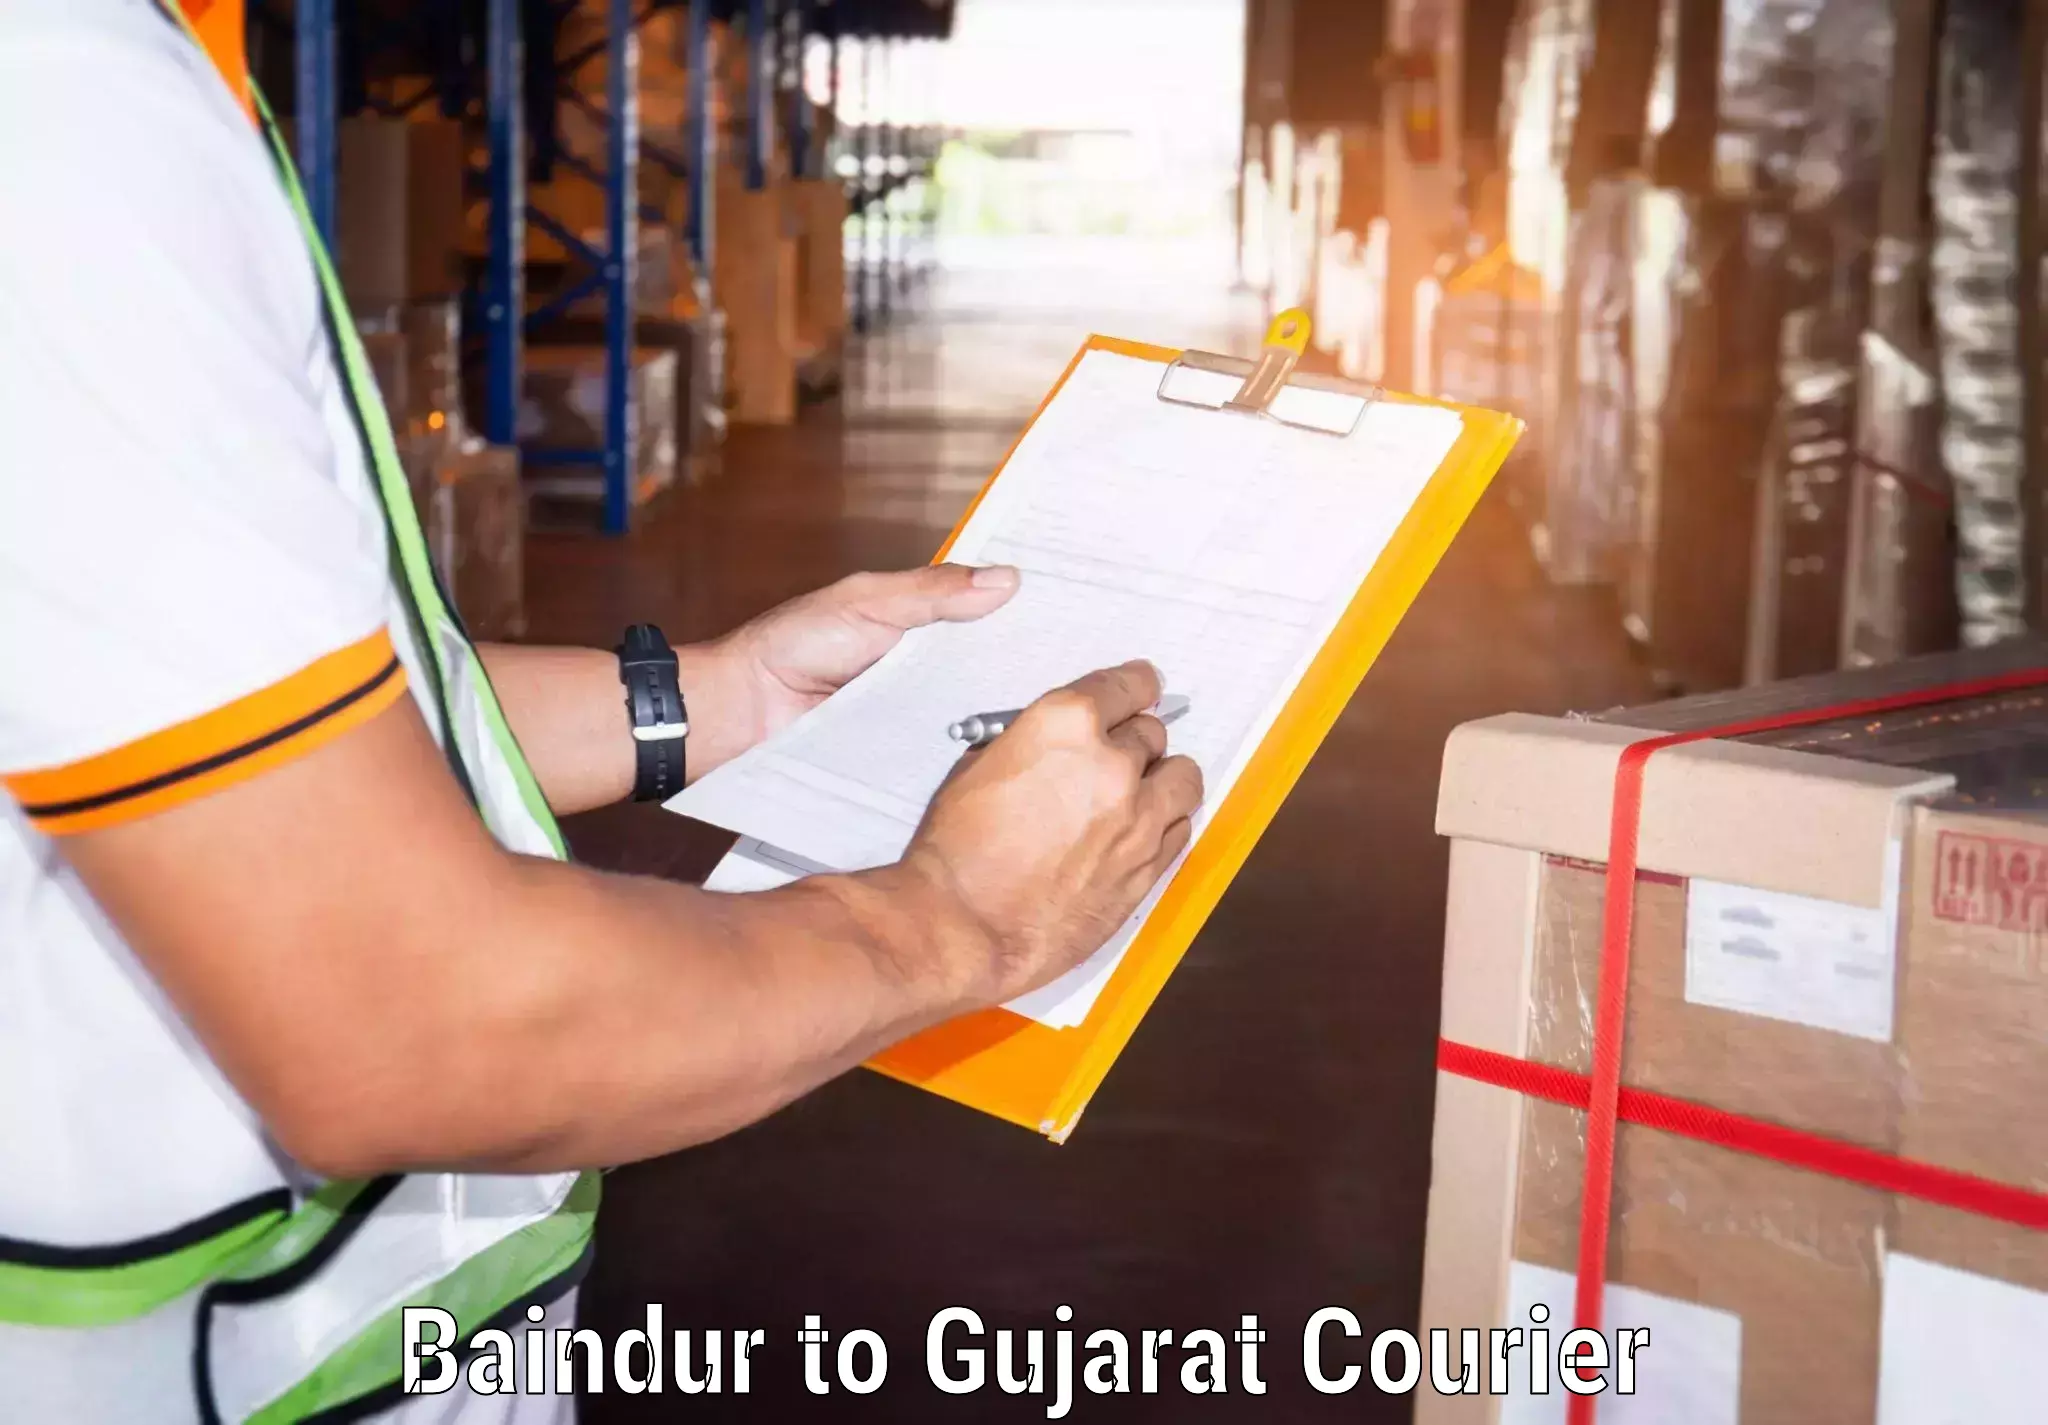 Urgent courier needs Baindur to Mahesana